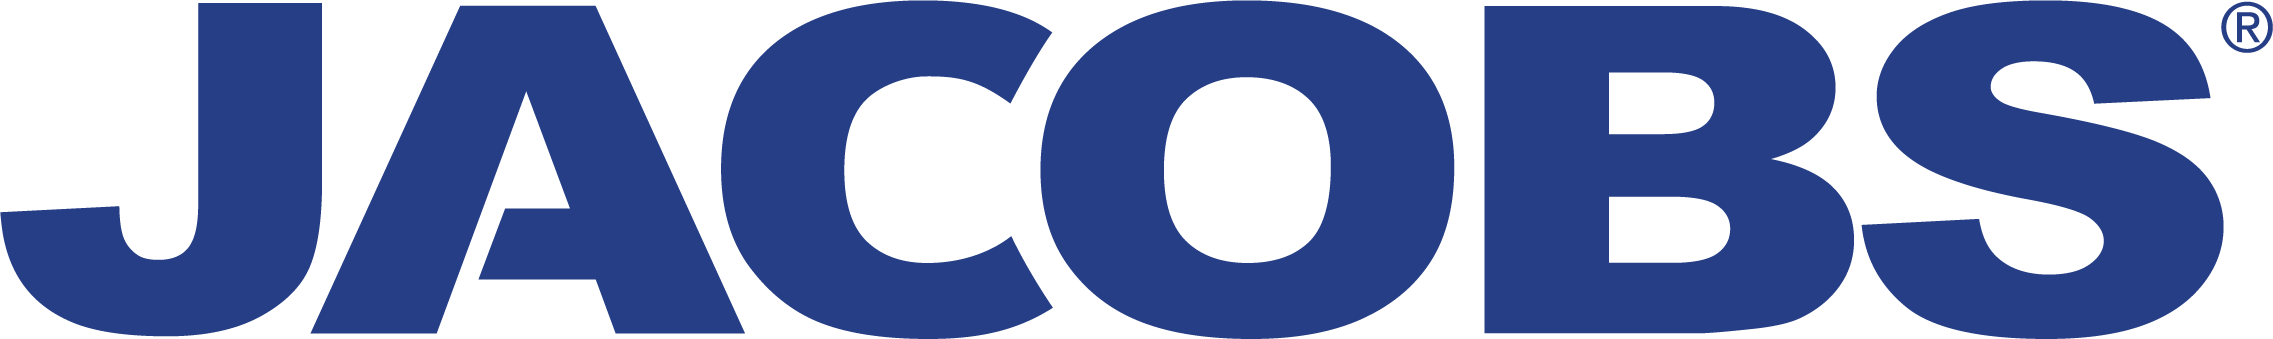 Jacobs Logo - Jacobs logo Mobility Foundation